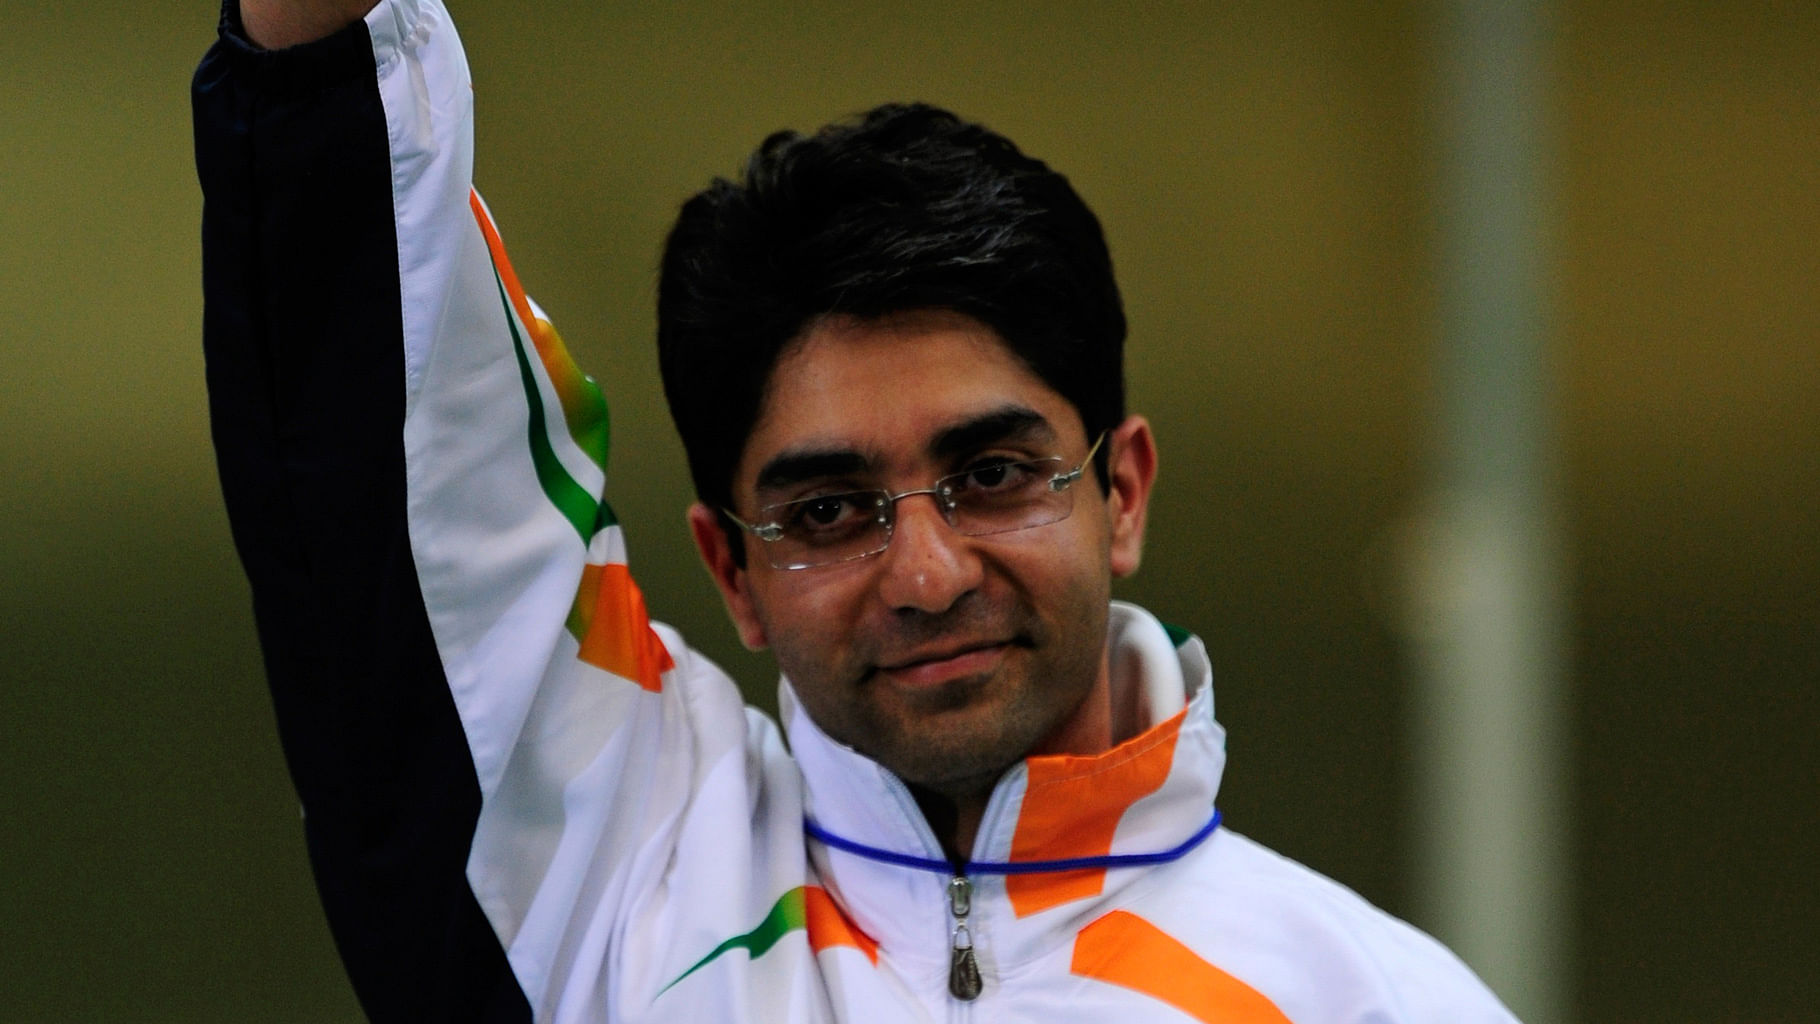 अभिनव बिंद्रा ने फाइनल की रेस में सातवां स्थान हासिल किया (फोटो: Reuters)